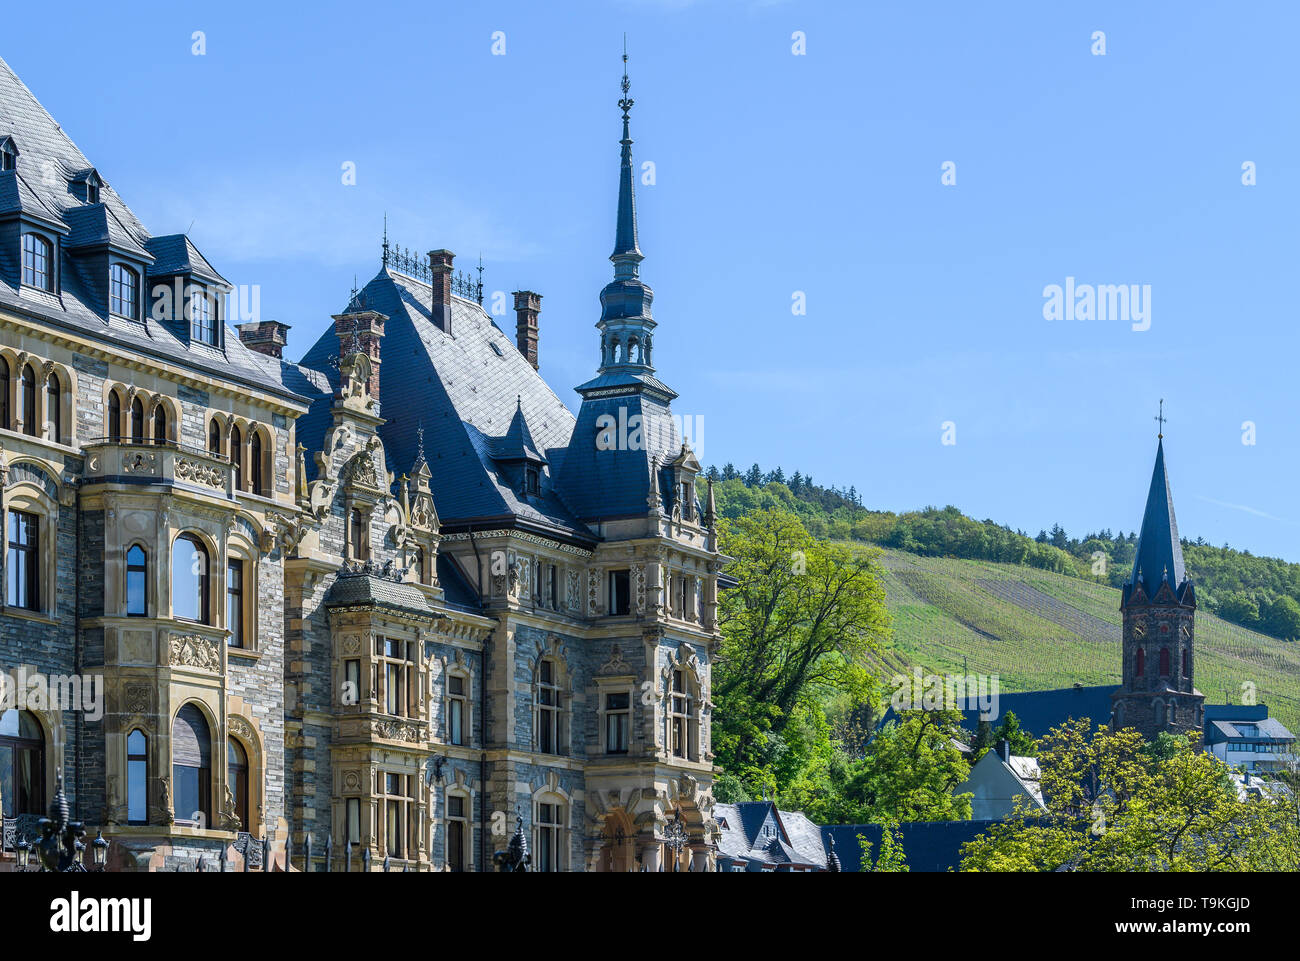 Lieser Lieser, château, vallée de la Moselle, Allemagne Banque D'Images